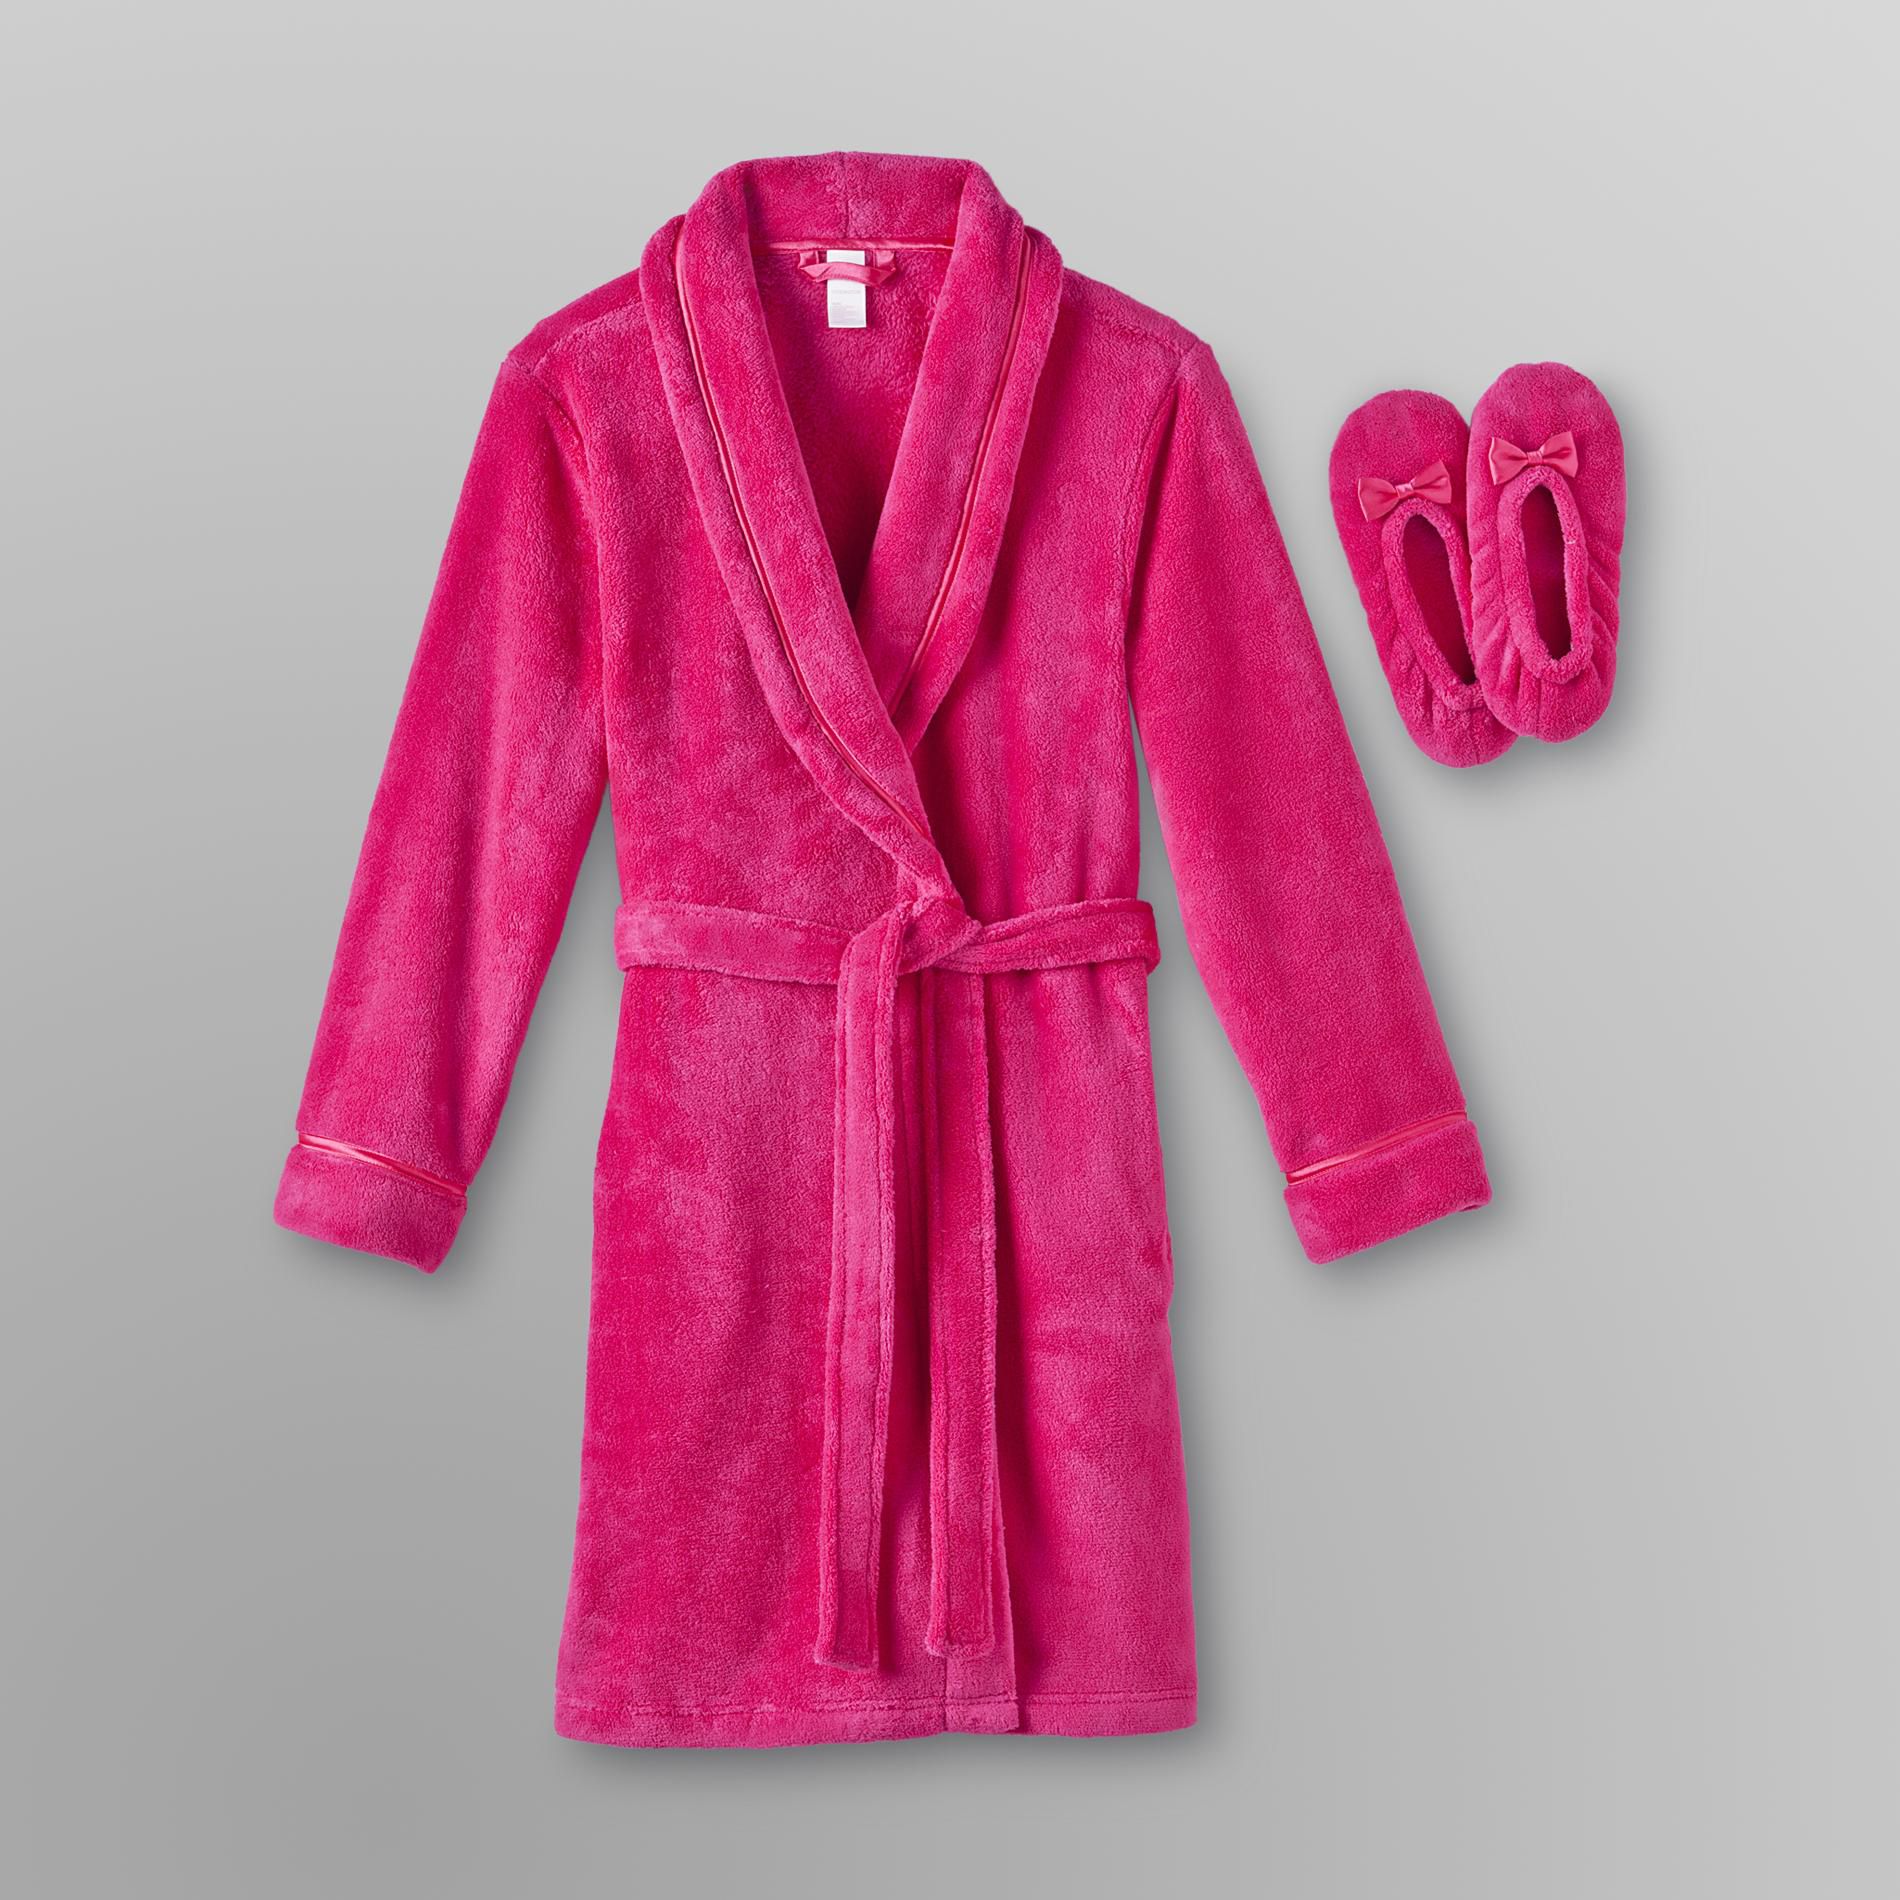 Covington Women's Plush Robe and Slipper Set